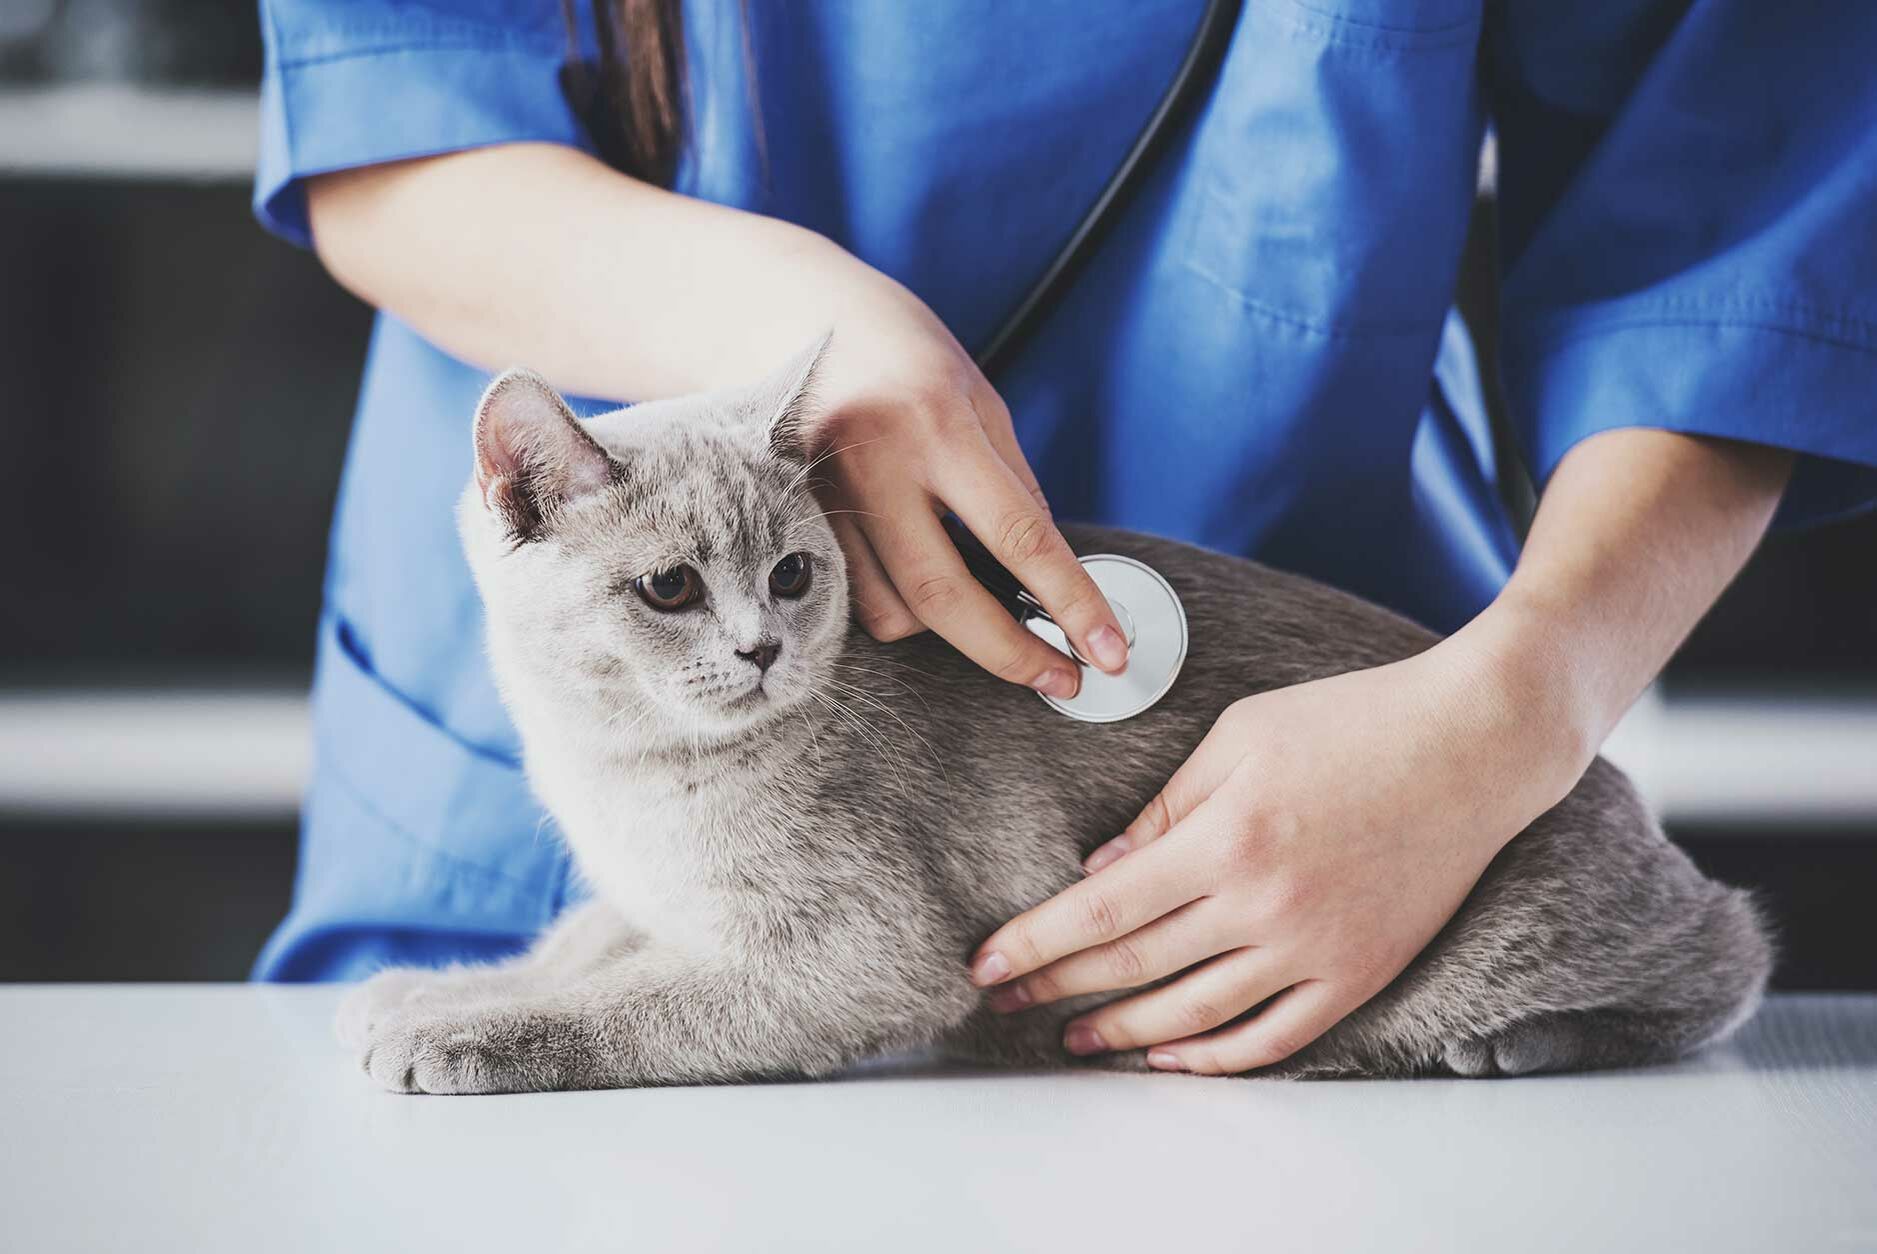 Wann gehört das Blutbild zur Vorsorge Ihrer Katze?